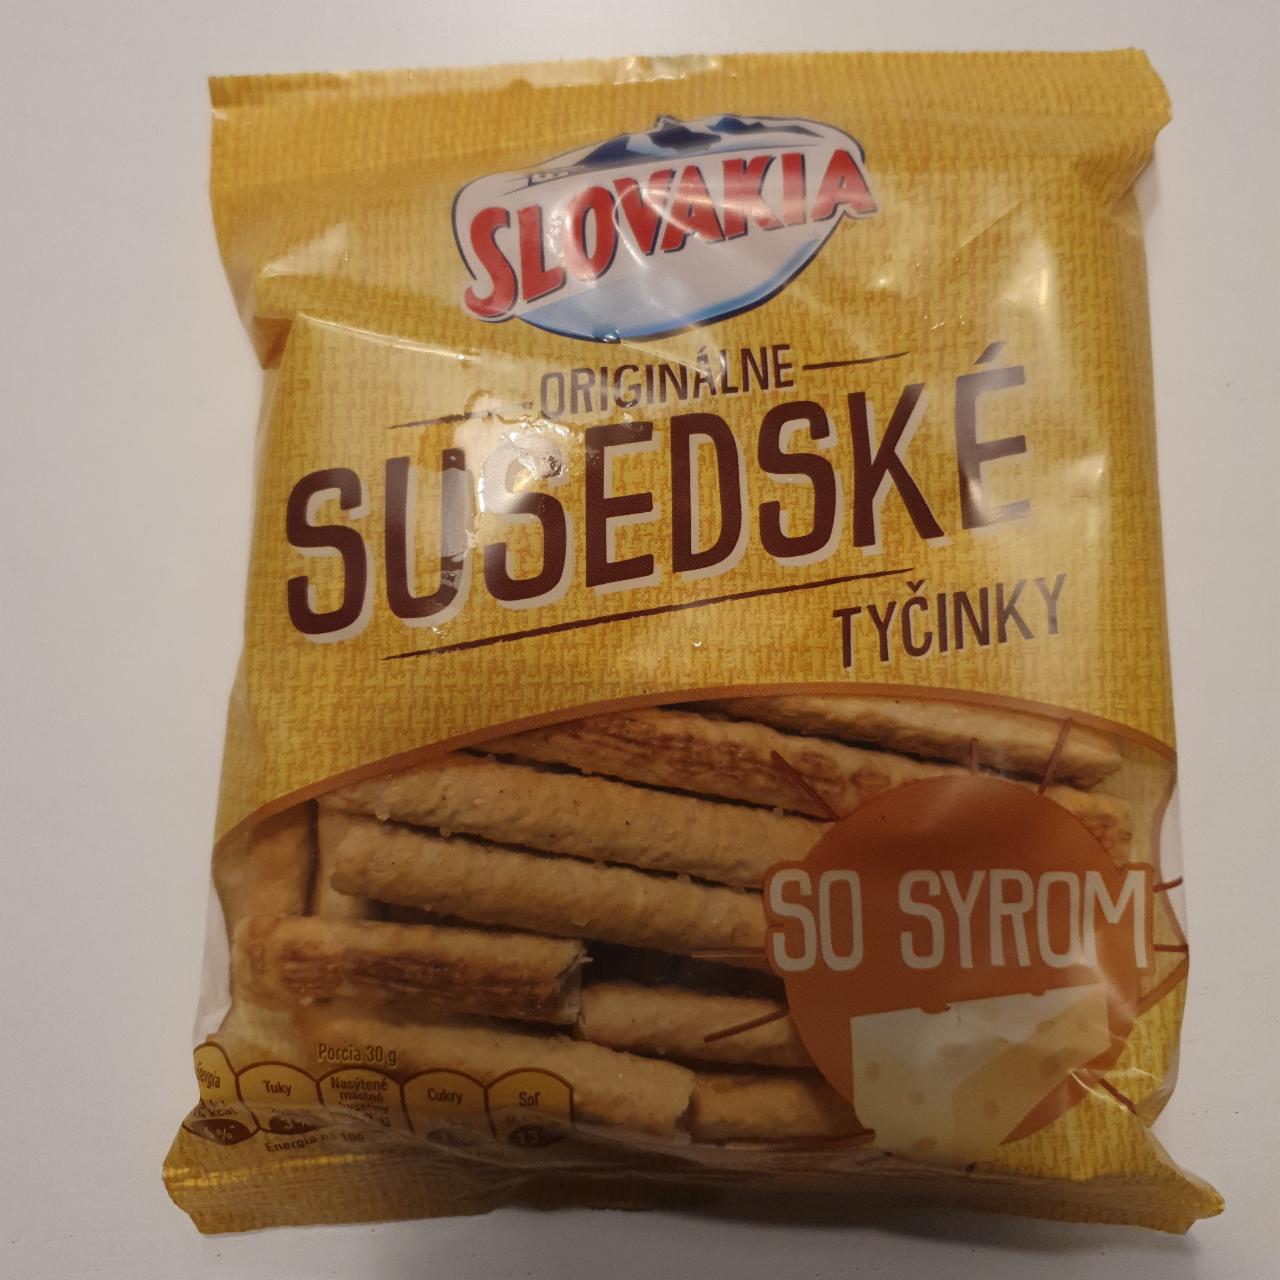 Fotografie - Originálne Susedské Tyčinky so syrom Slovakia